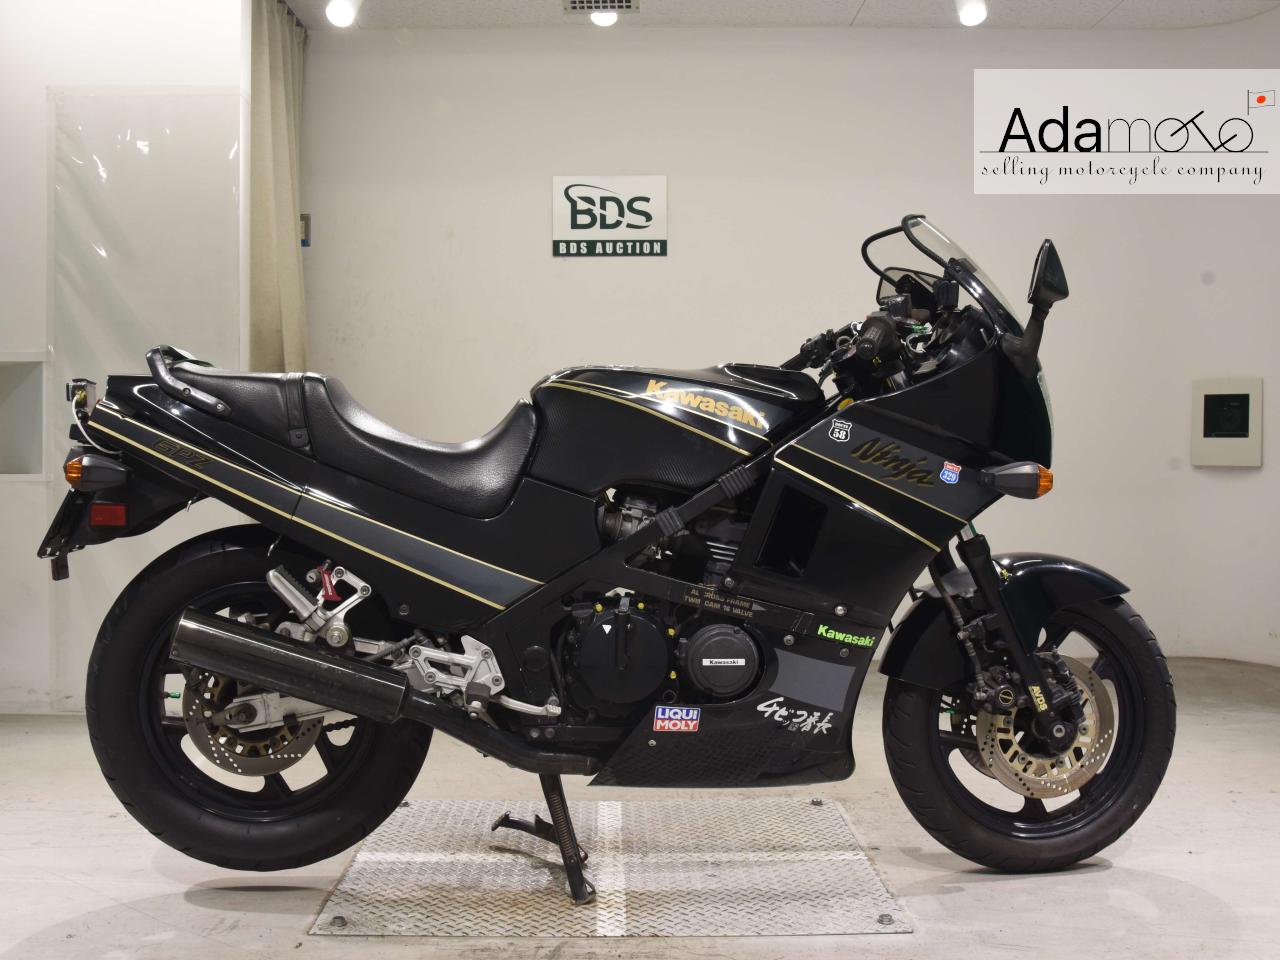 Kawasaki GPZ400R - Adamoto - Motorcycles from Japan